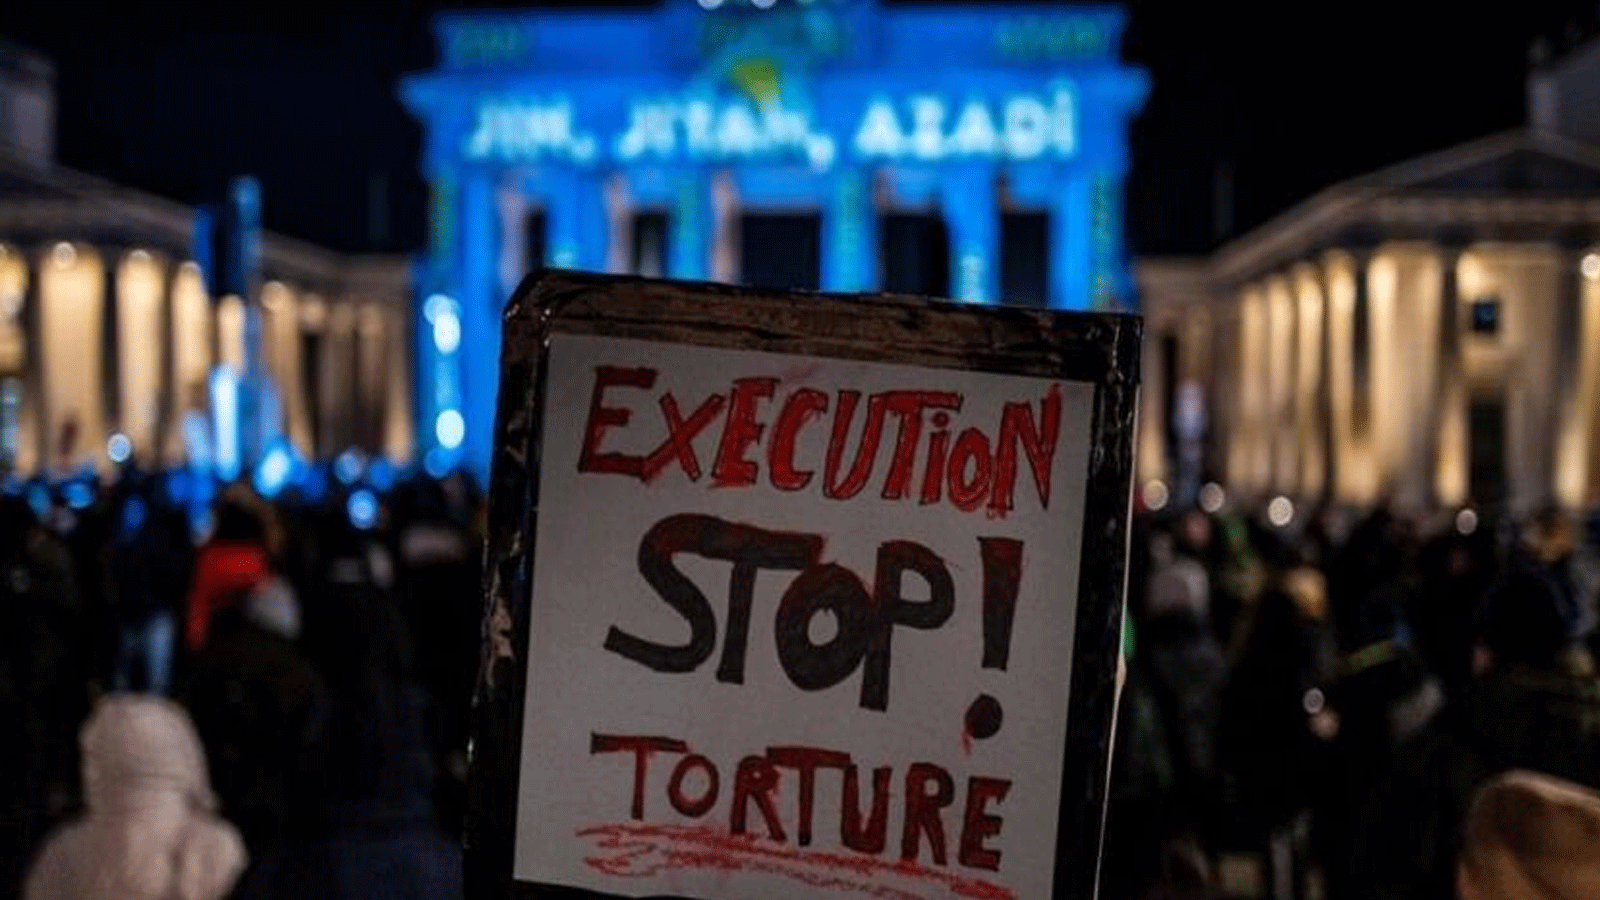  نشطاء ينددون بعمليات الإعدام مؤكدين بإجراءات دولية أكثر صرامة